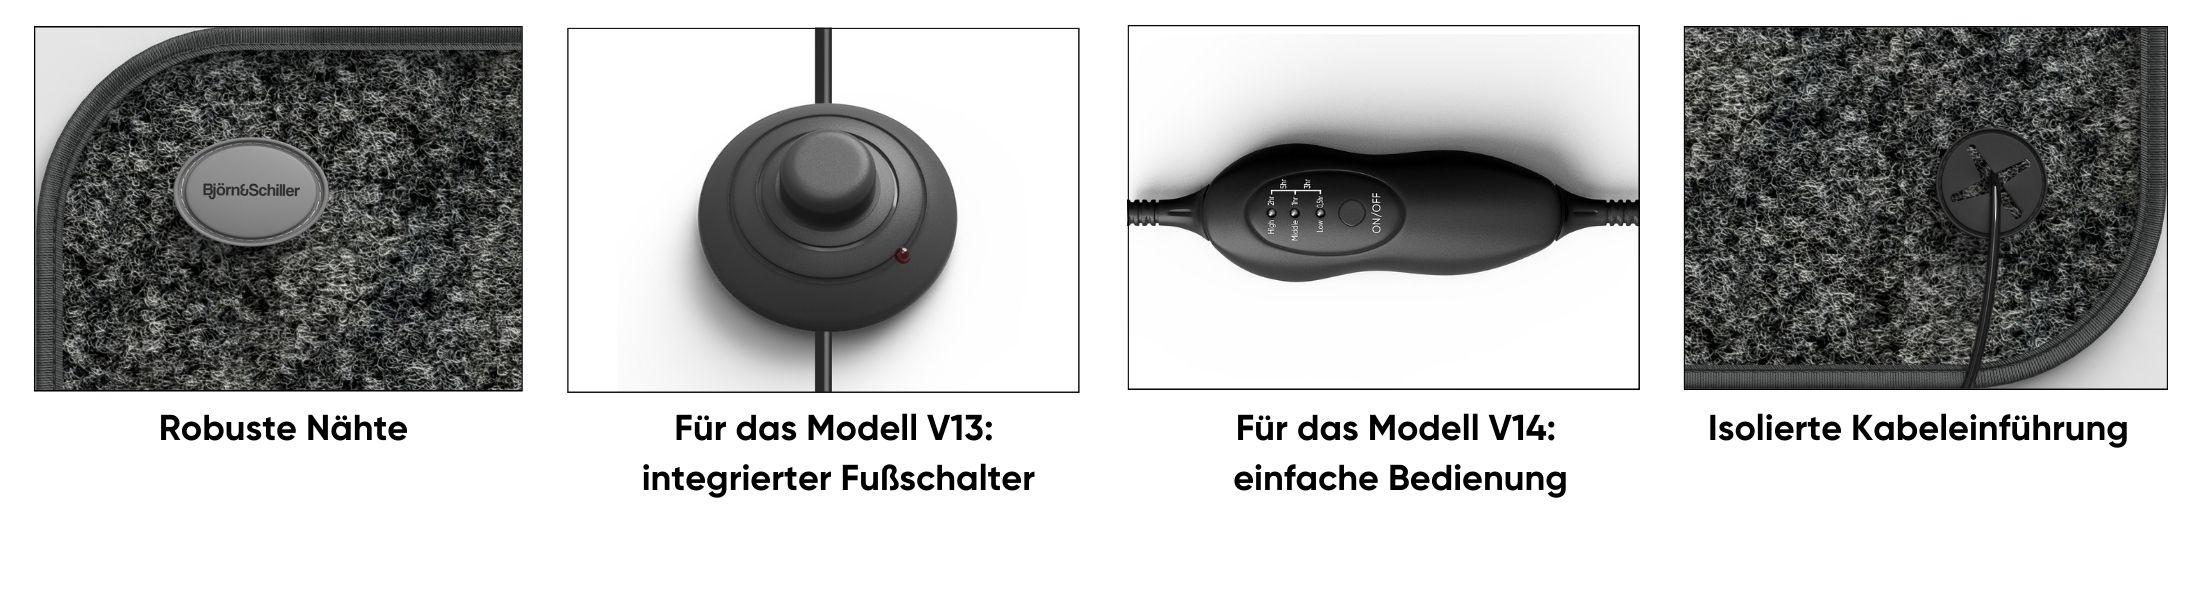 Björn&Schiller elektrische Heizmatte für Füße 40x60 cm, 75/100 Watt, niedriger Stromverbrauch, platzsparend, beheizbare Fußmatte-3